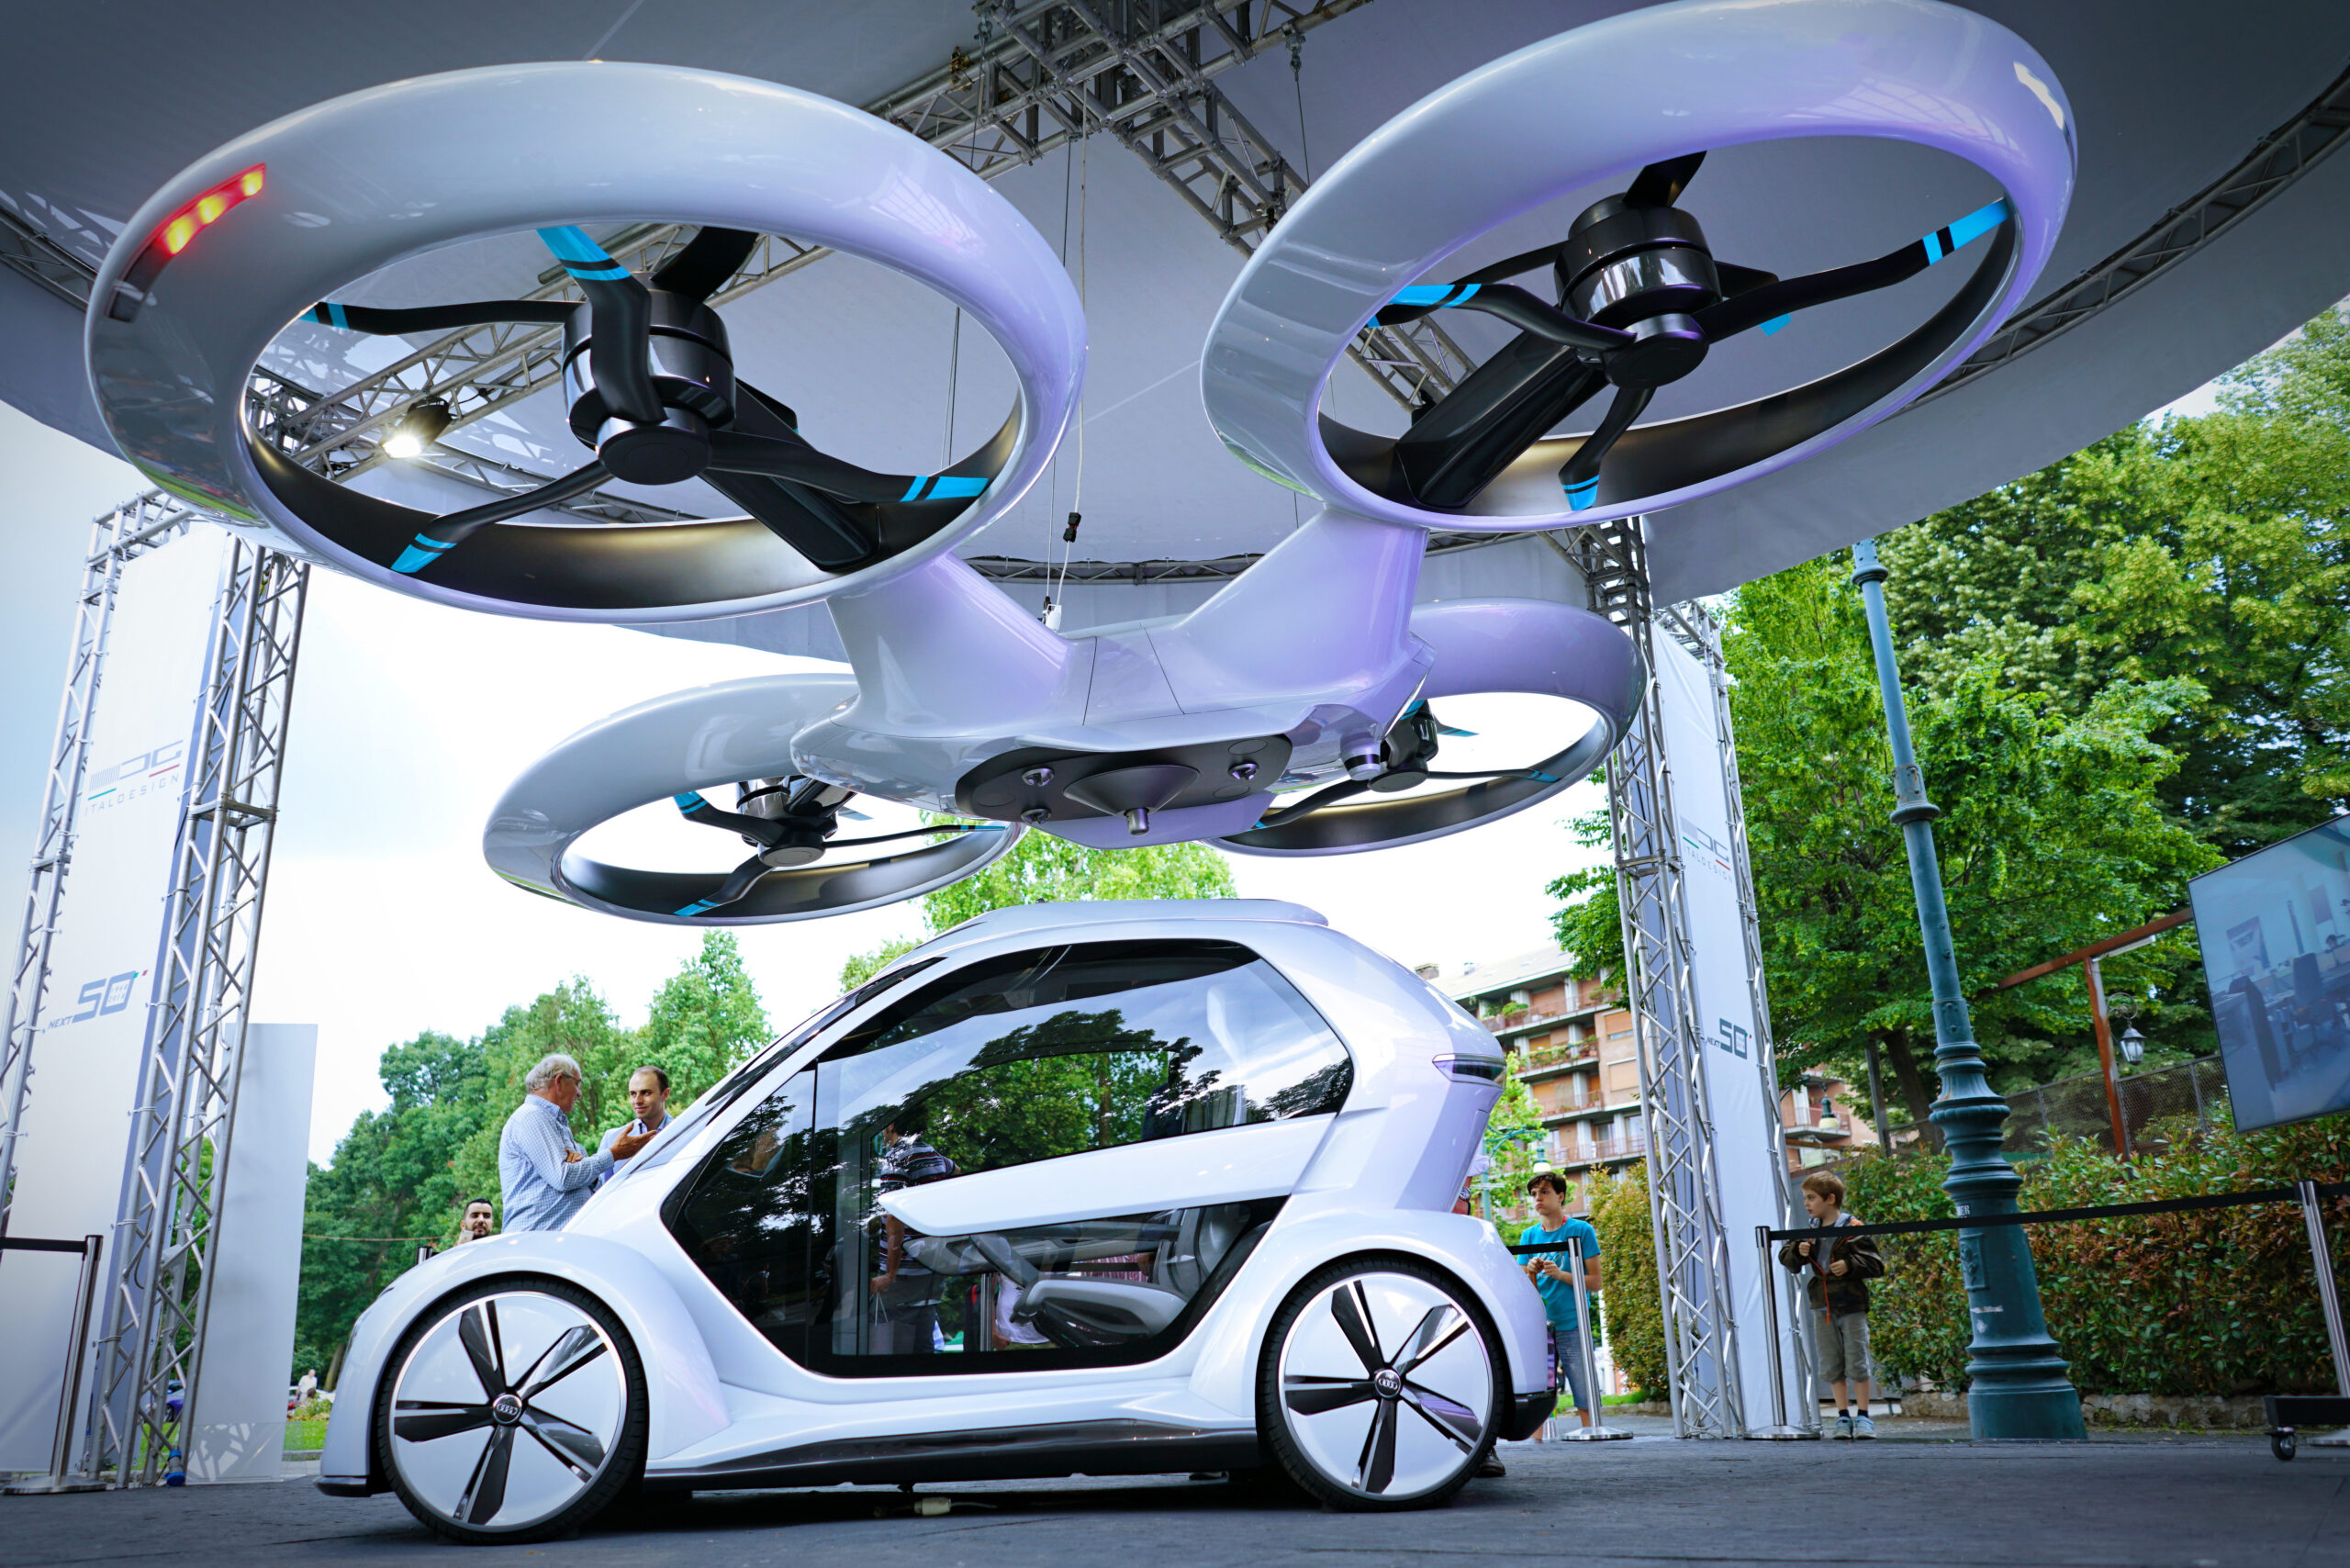 Autonomous vehicles